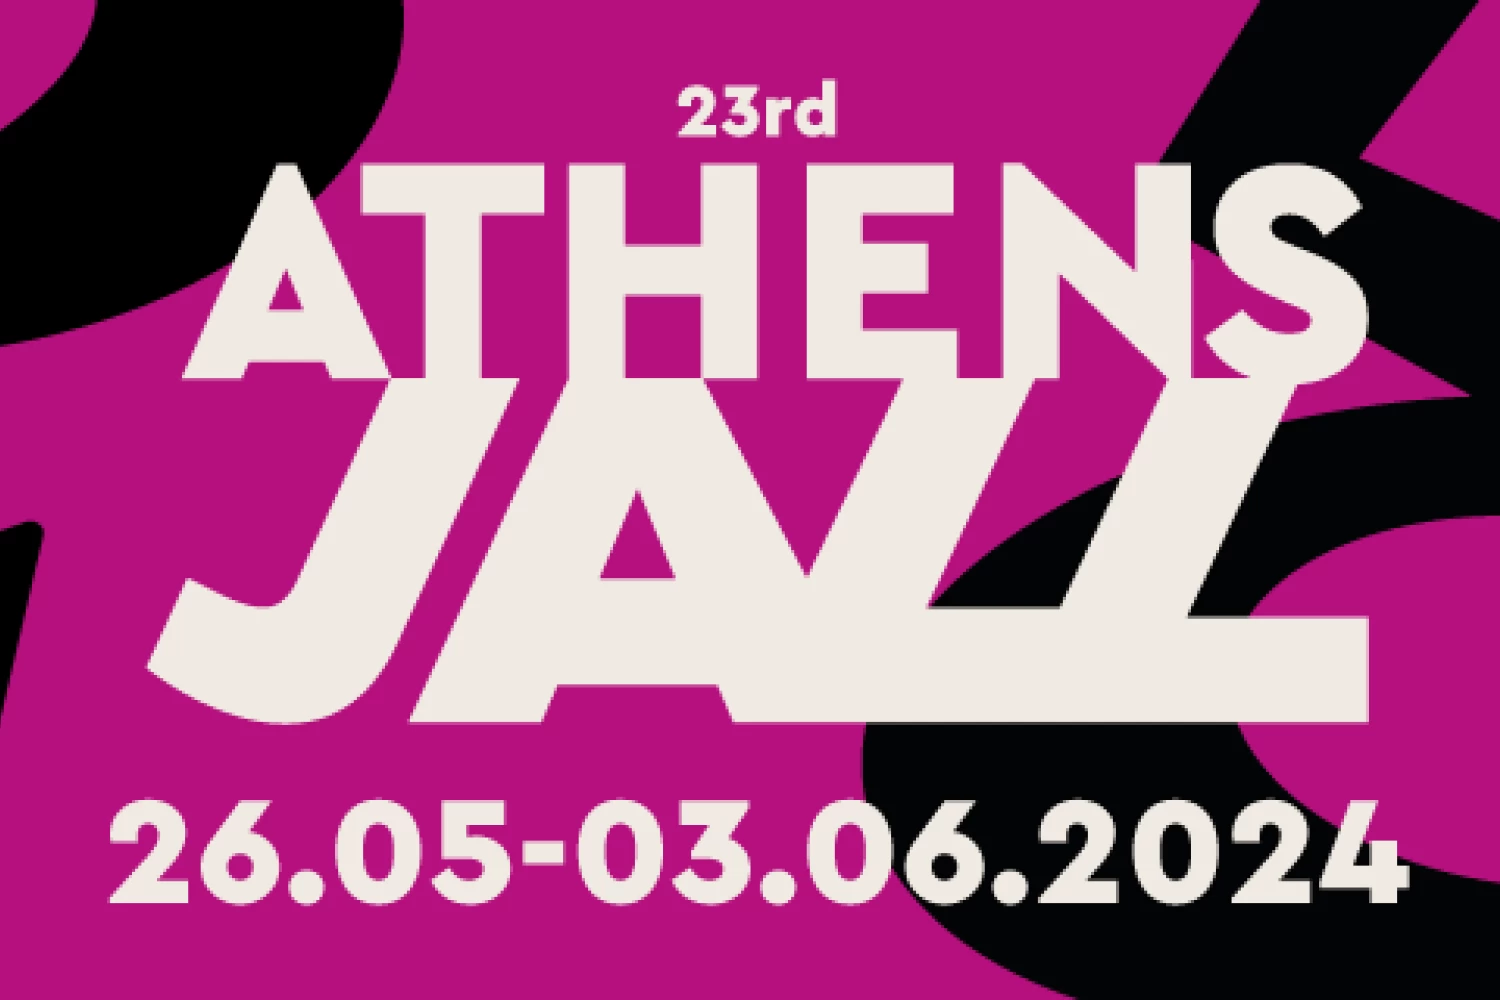 Το μεγαλύτερο Athens Jazz που έγινε ποτέ είναι εδώ!